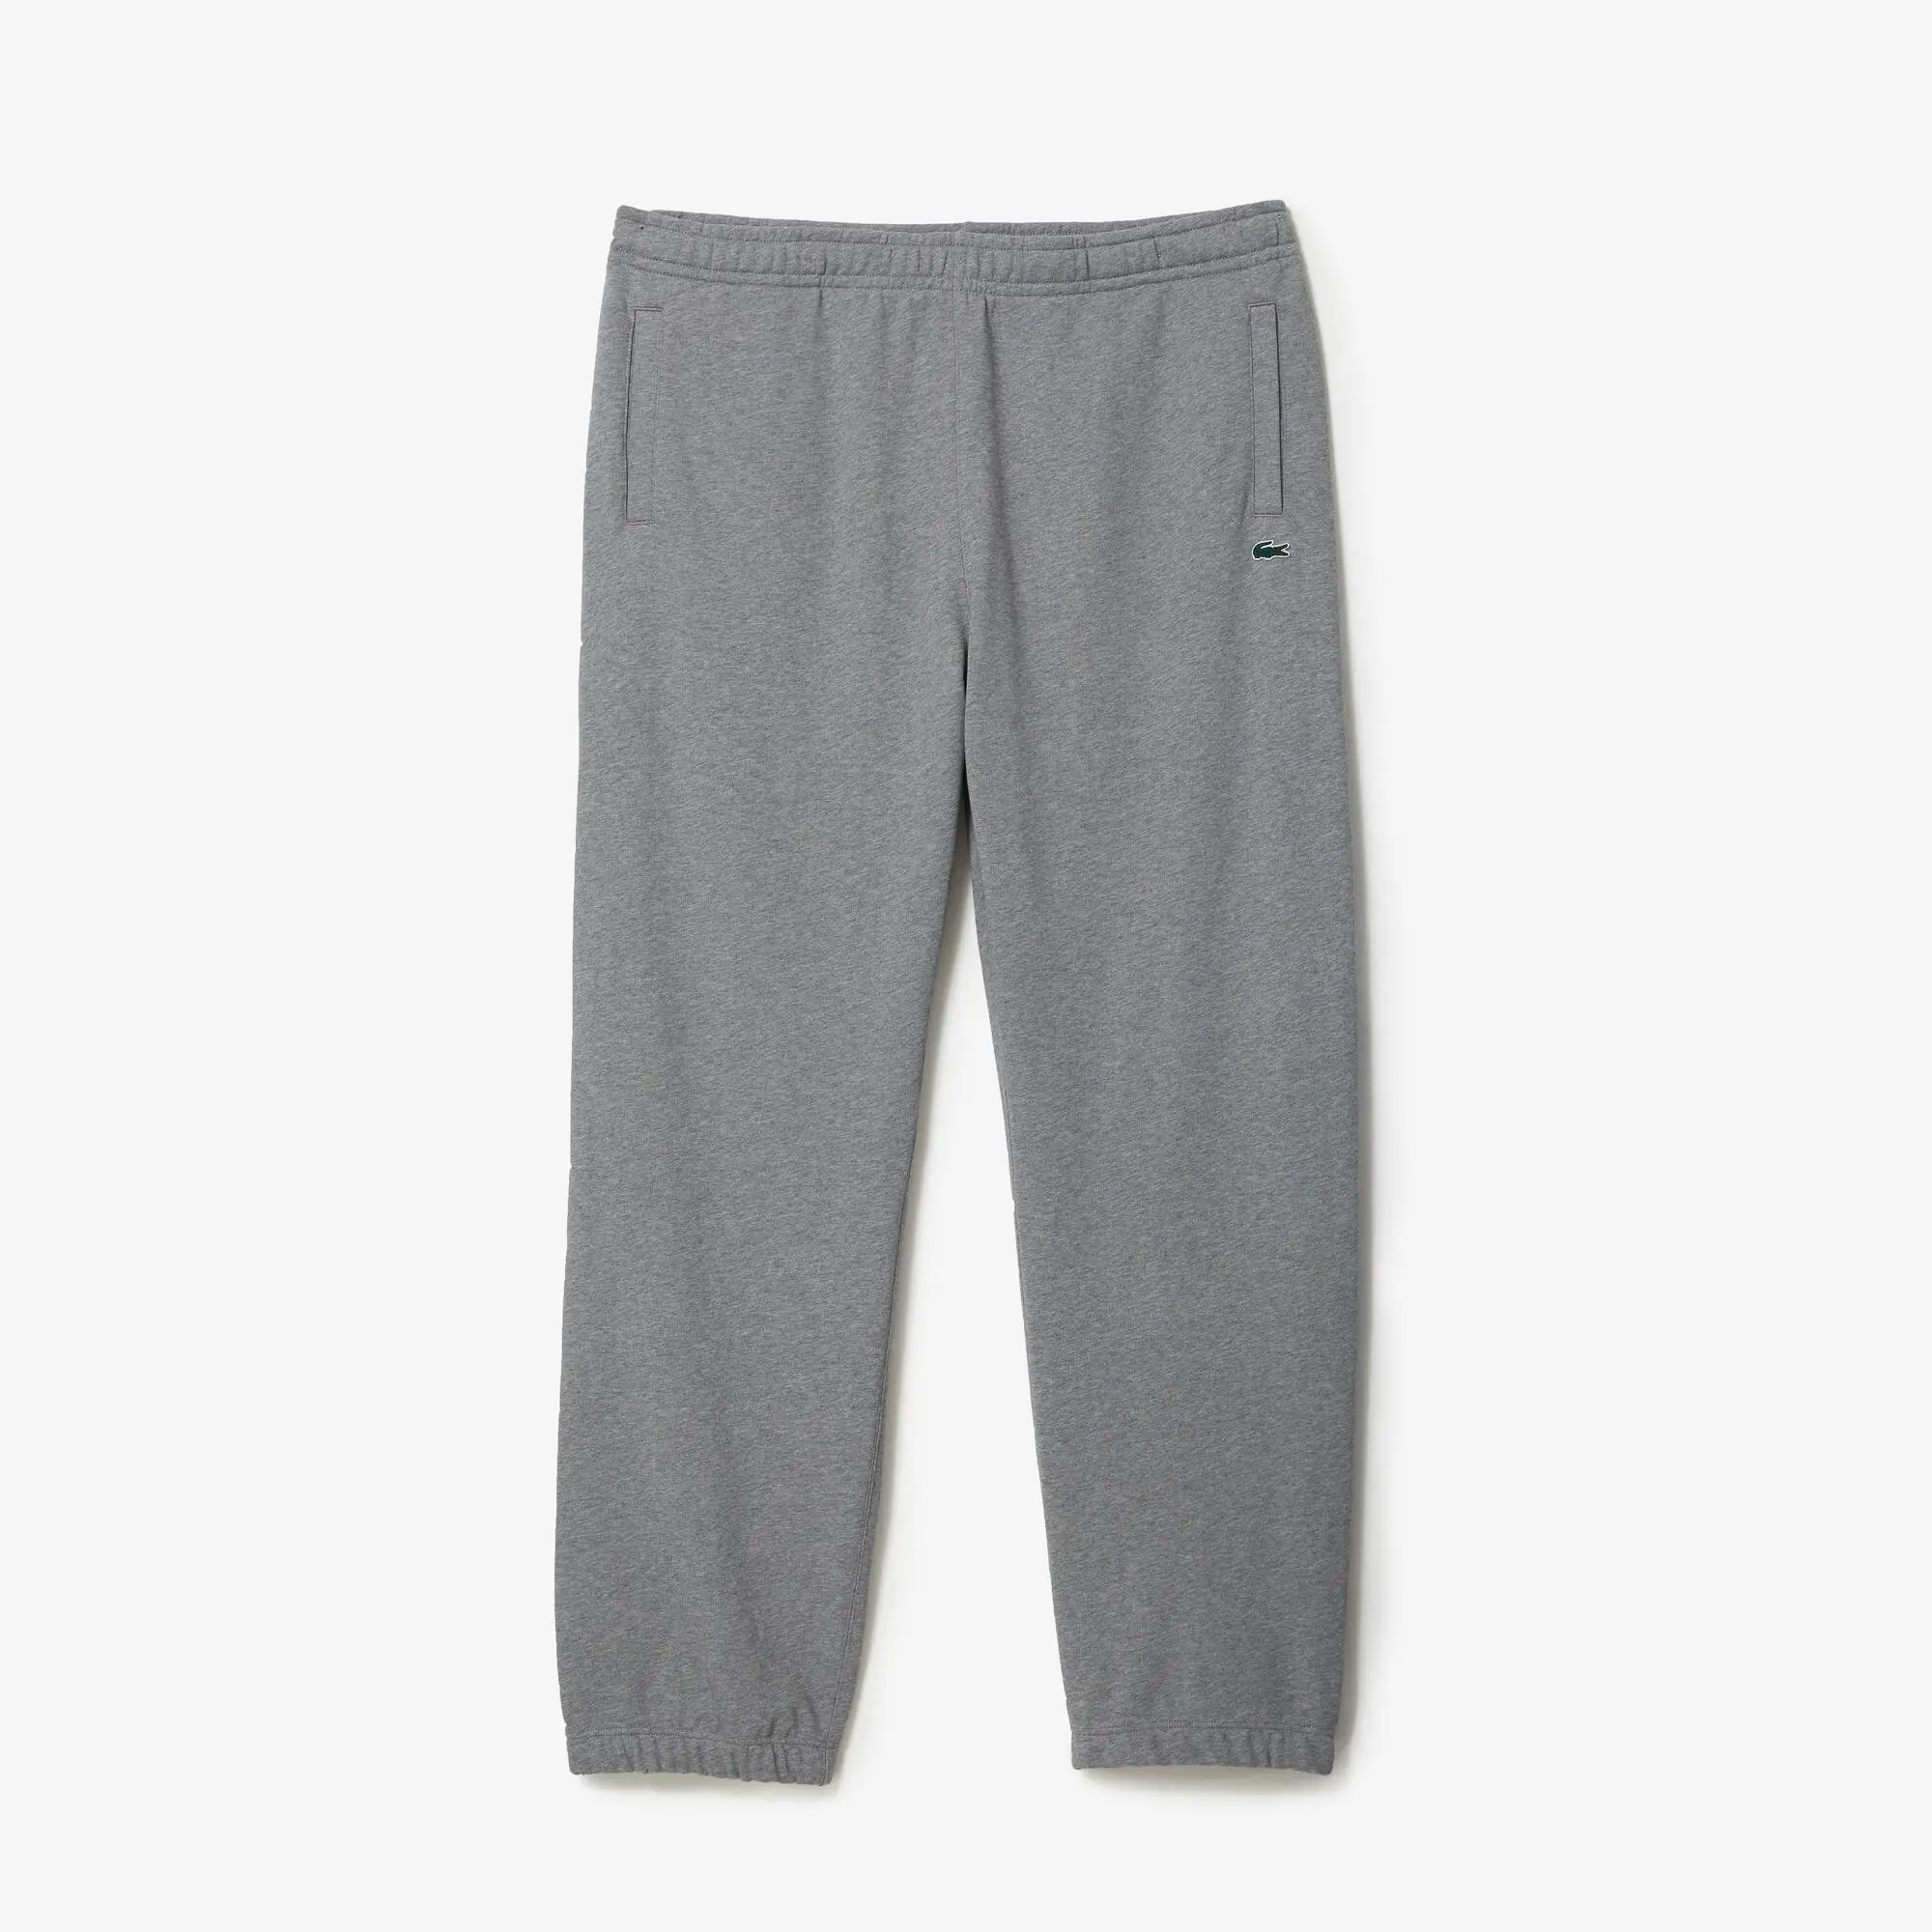 Lacoste Men’s Tall Fit Cotton Sweatpants. 2